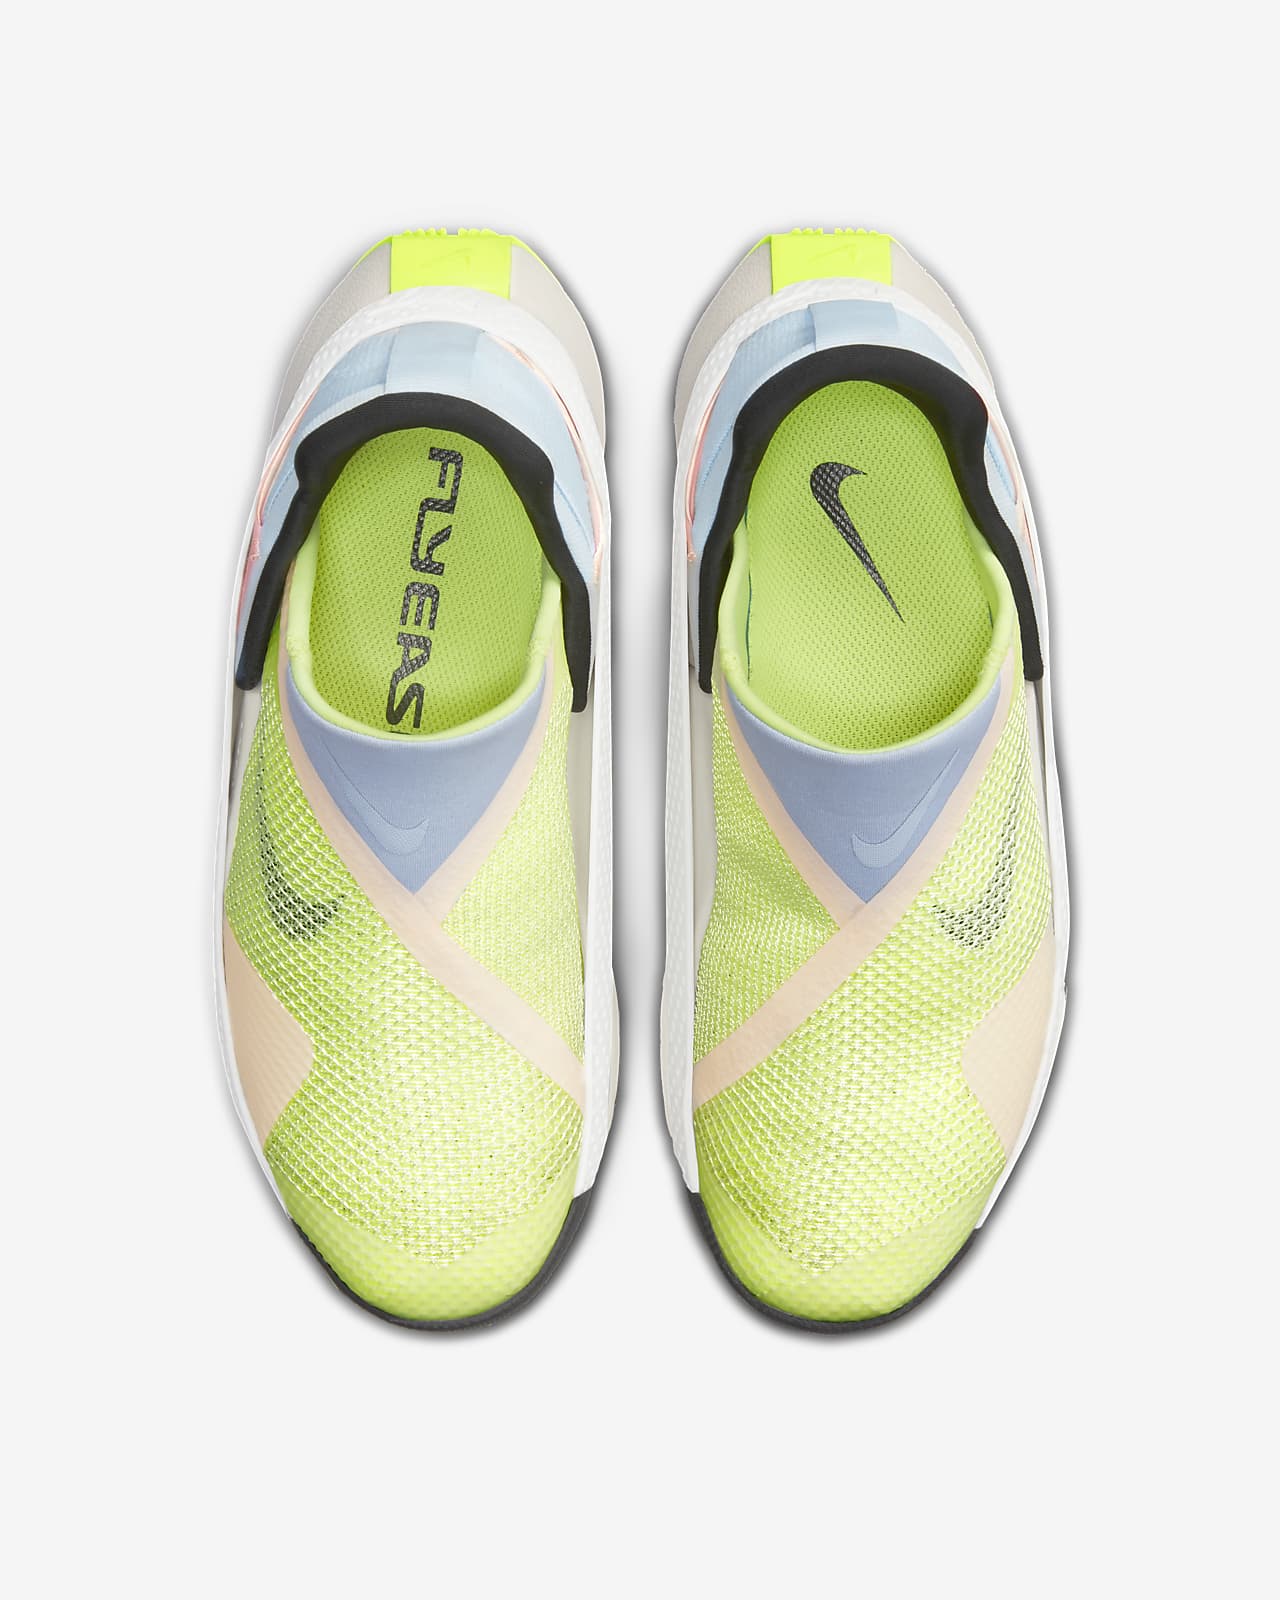 Nike Go FlyEase Shoe